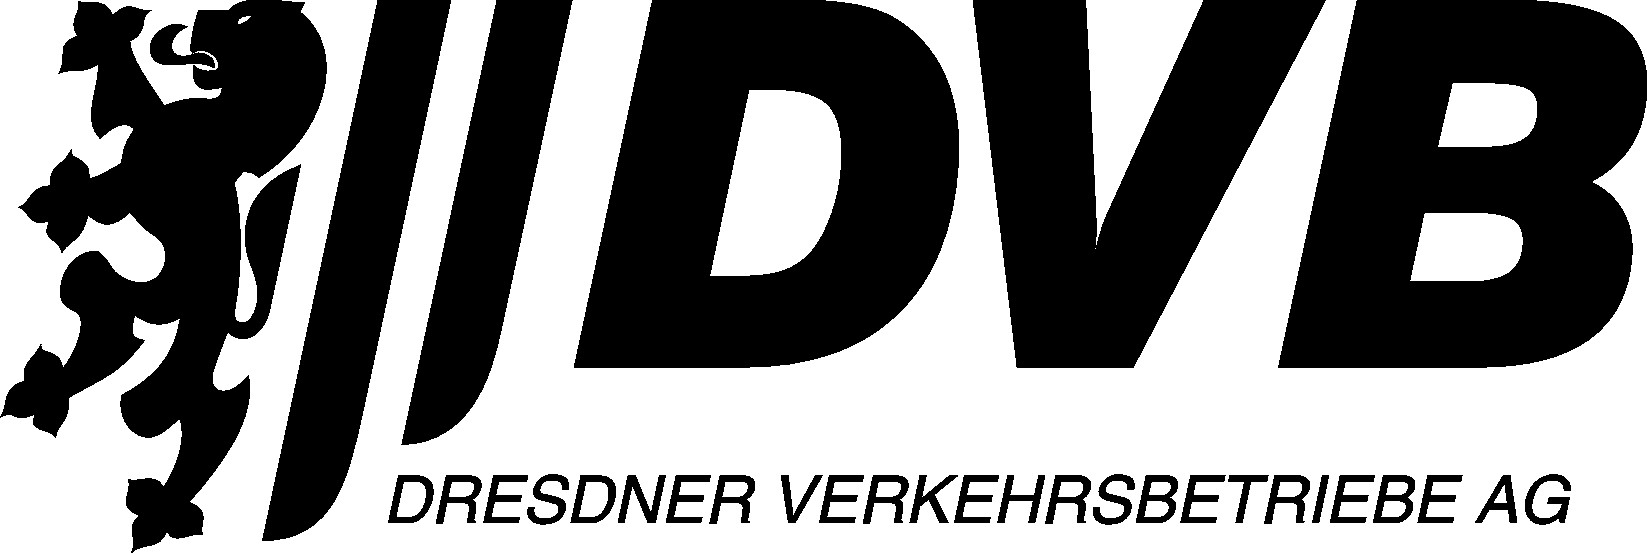 DVB Logo